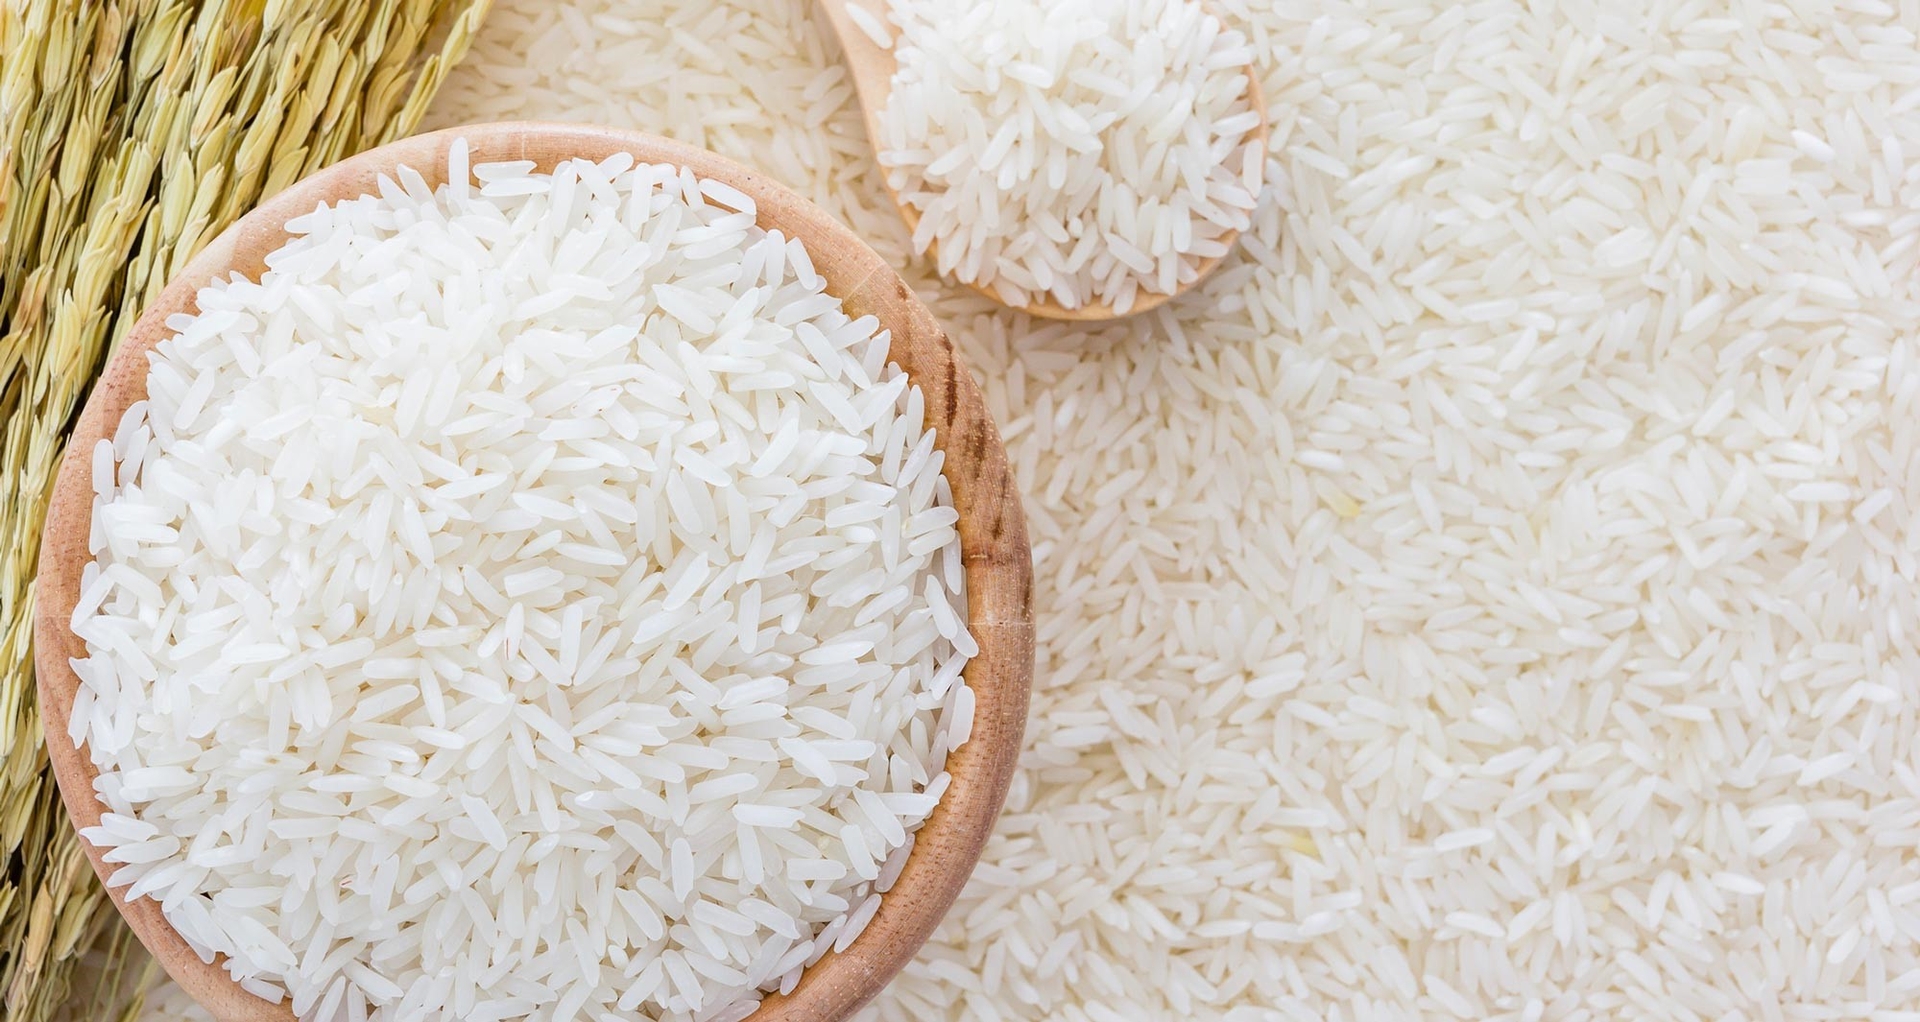 Thủ tướng vừa có chỉ thị về an ninh lương thực quốc gia và thúc đẩy sản xuất, xuất khẩu gạo bền vững.